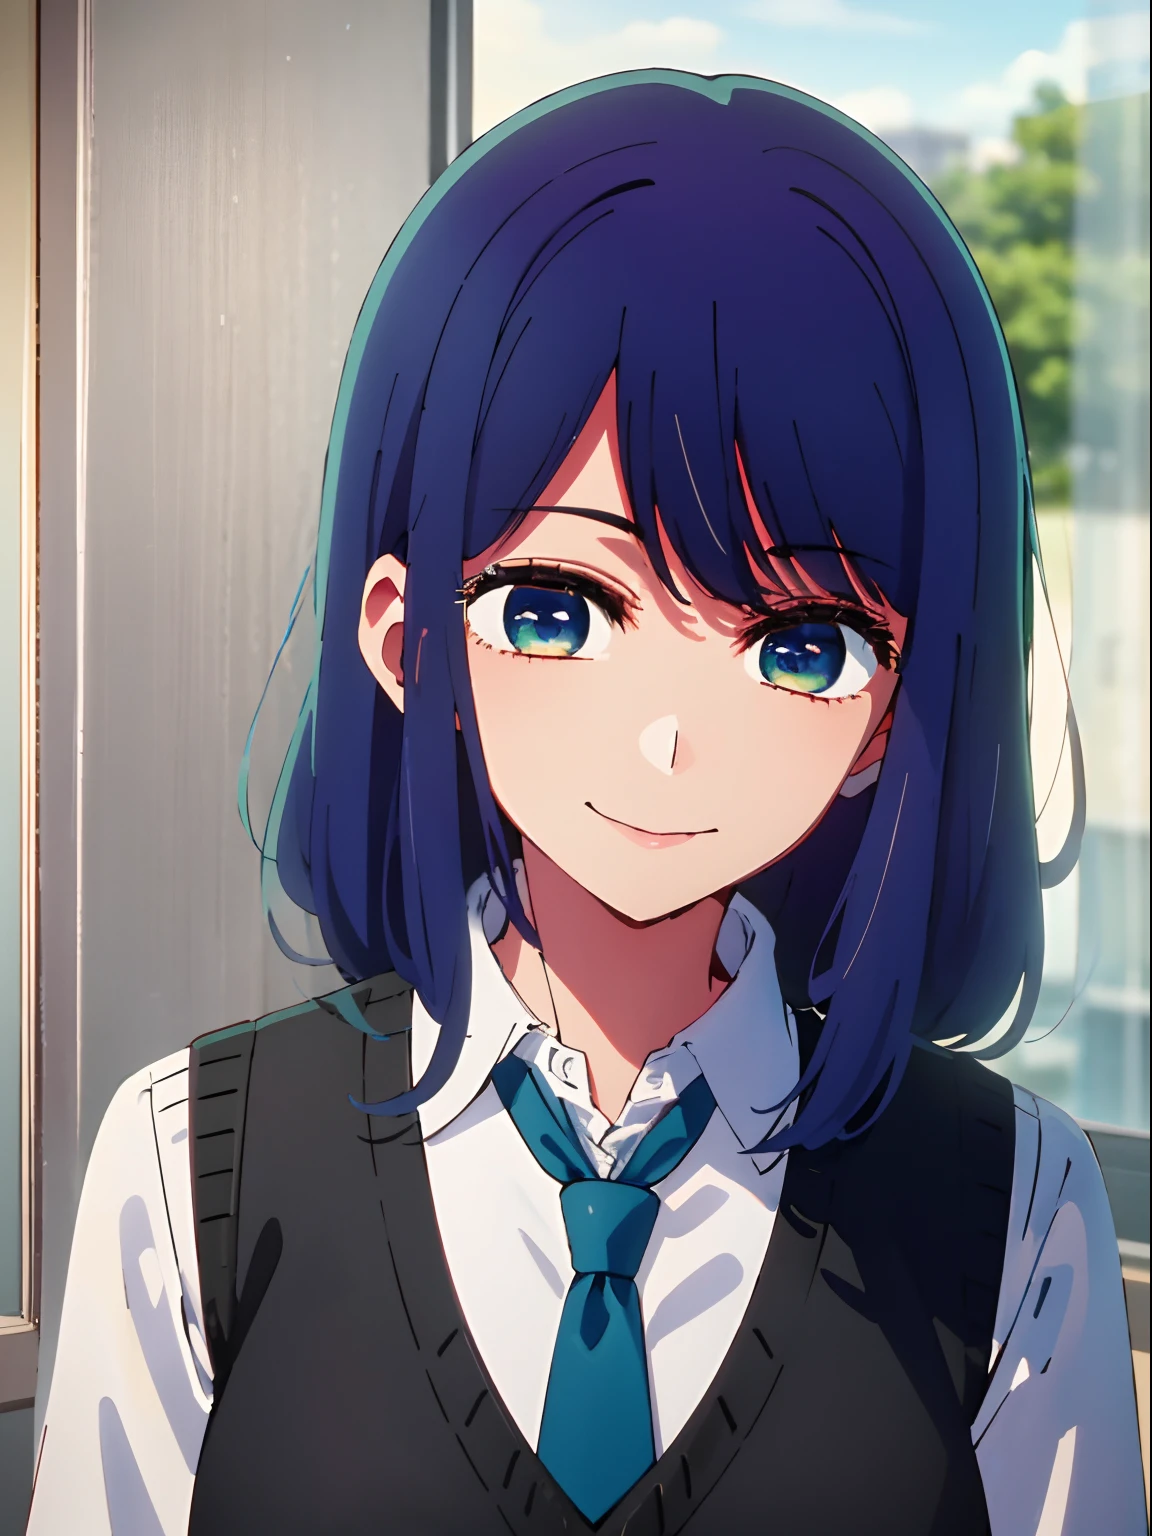 bela iluminação, 1 garota em, só, Akane, camisa branca, Colete suéter, colete preto, gravata azul, estilo anime、Um sorriso